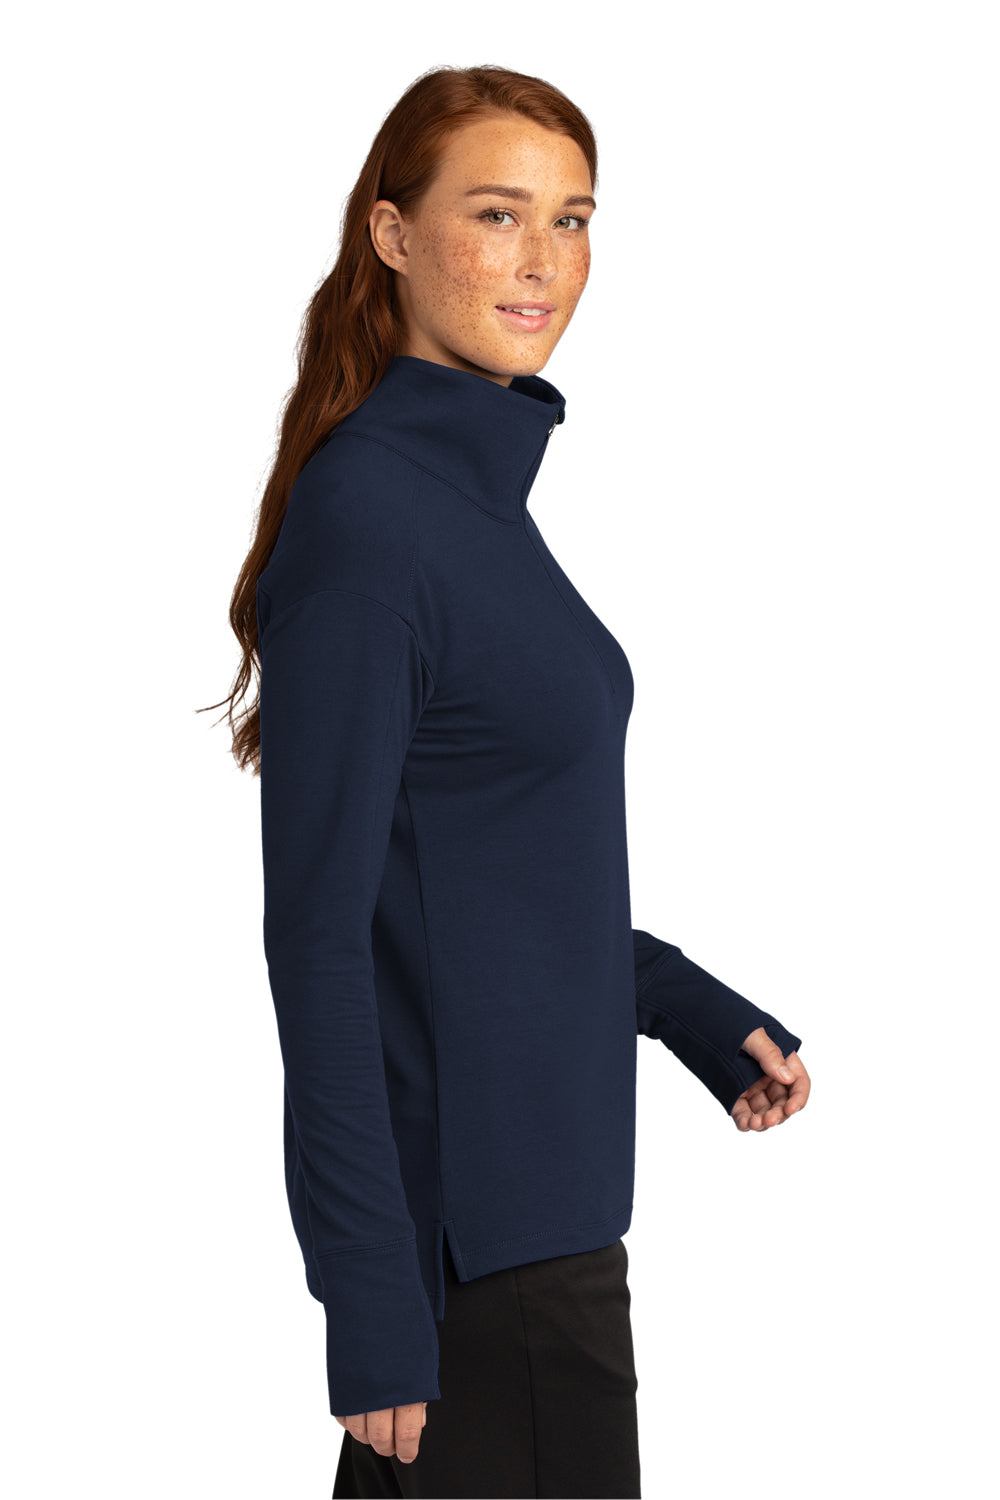 Sport-Tek Womens Flex Fleece 1/4 Zip Sweatshirt True Navy Blue Side